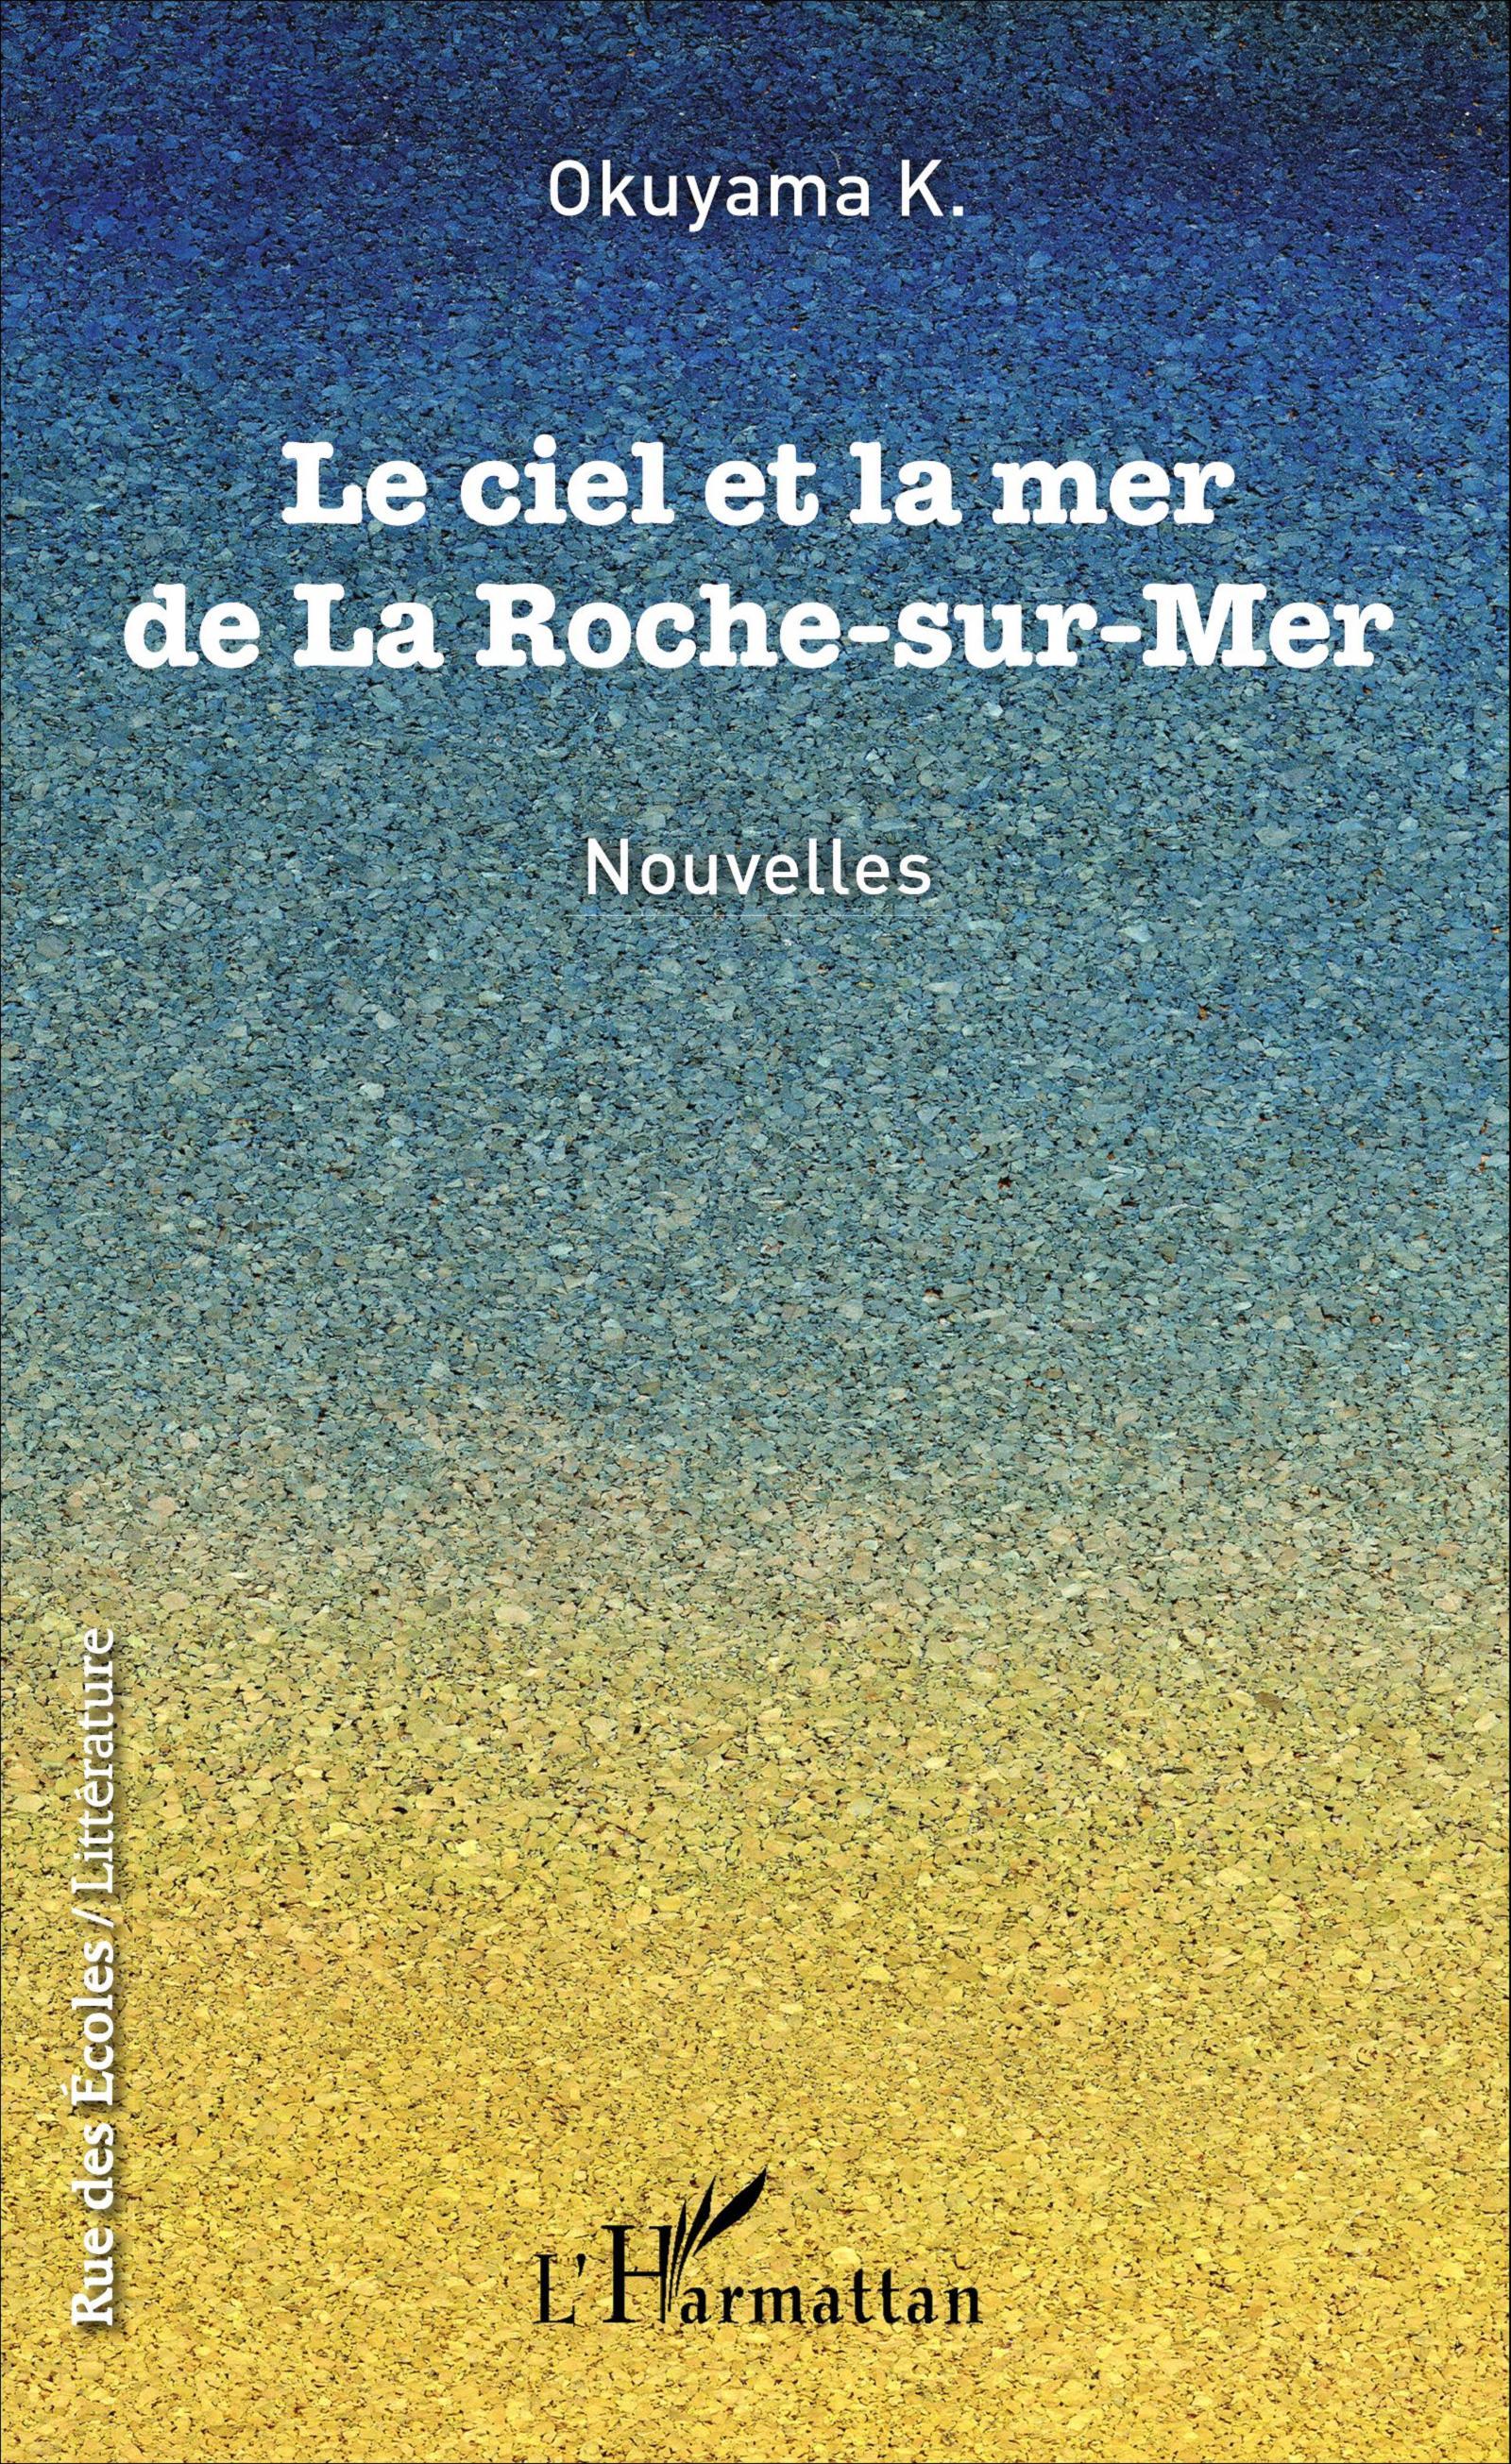 Le ciel et la mer de La Roche-sur-Mer, Nouvelles (9782343091327-front-cover)